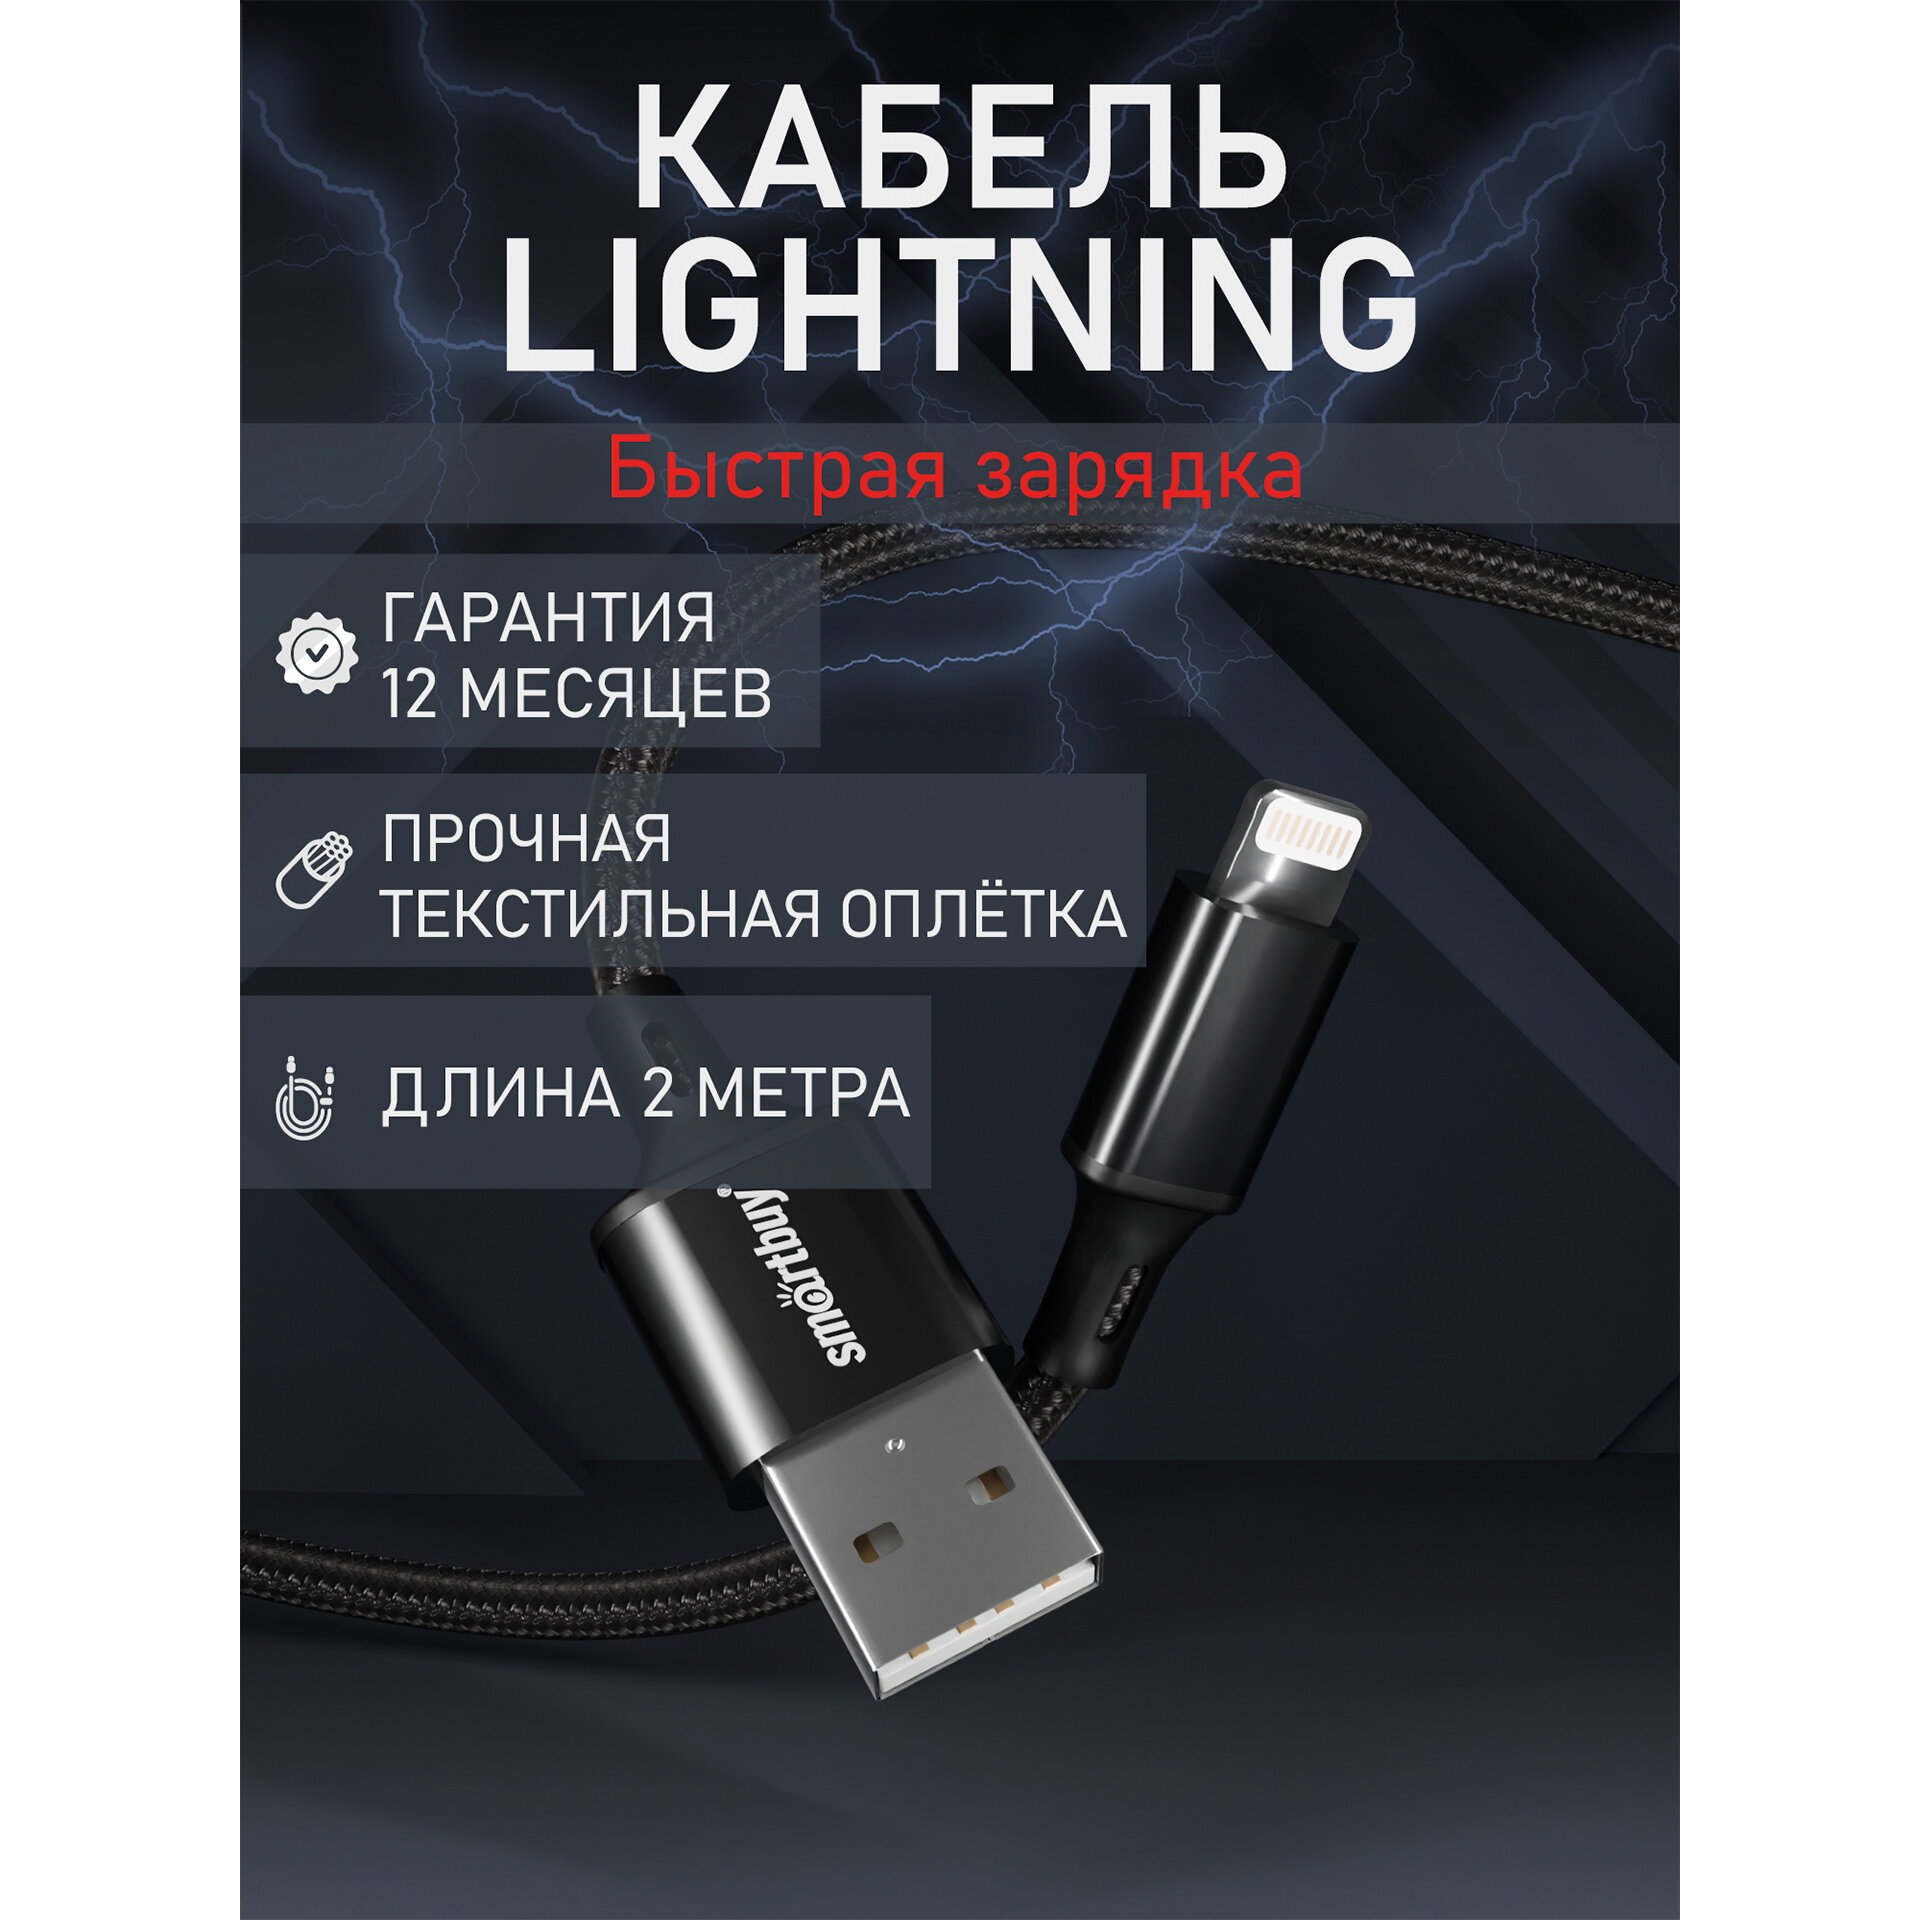 Кабель для зарядки и передачи данных S14 Lightning черный, 3 А, 2 м, Smartbuy (iK-522-S14b)